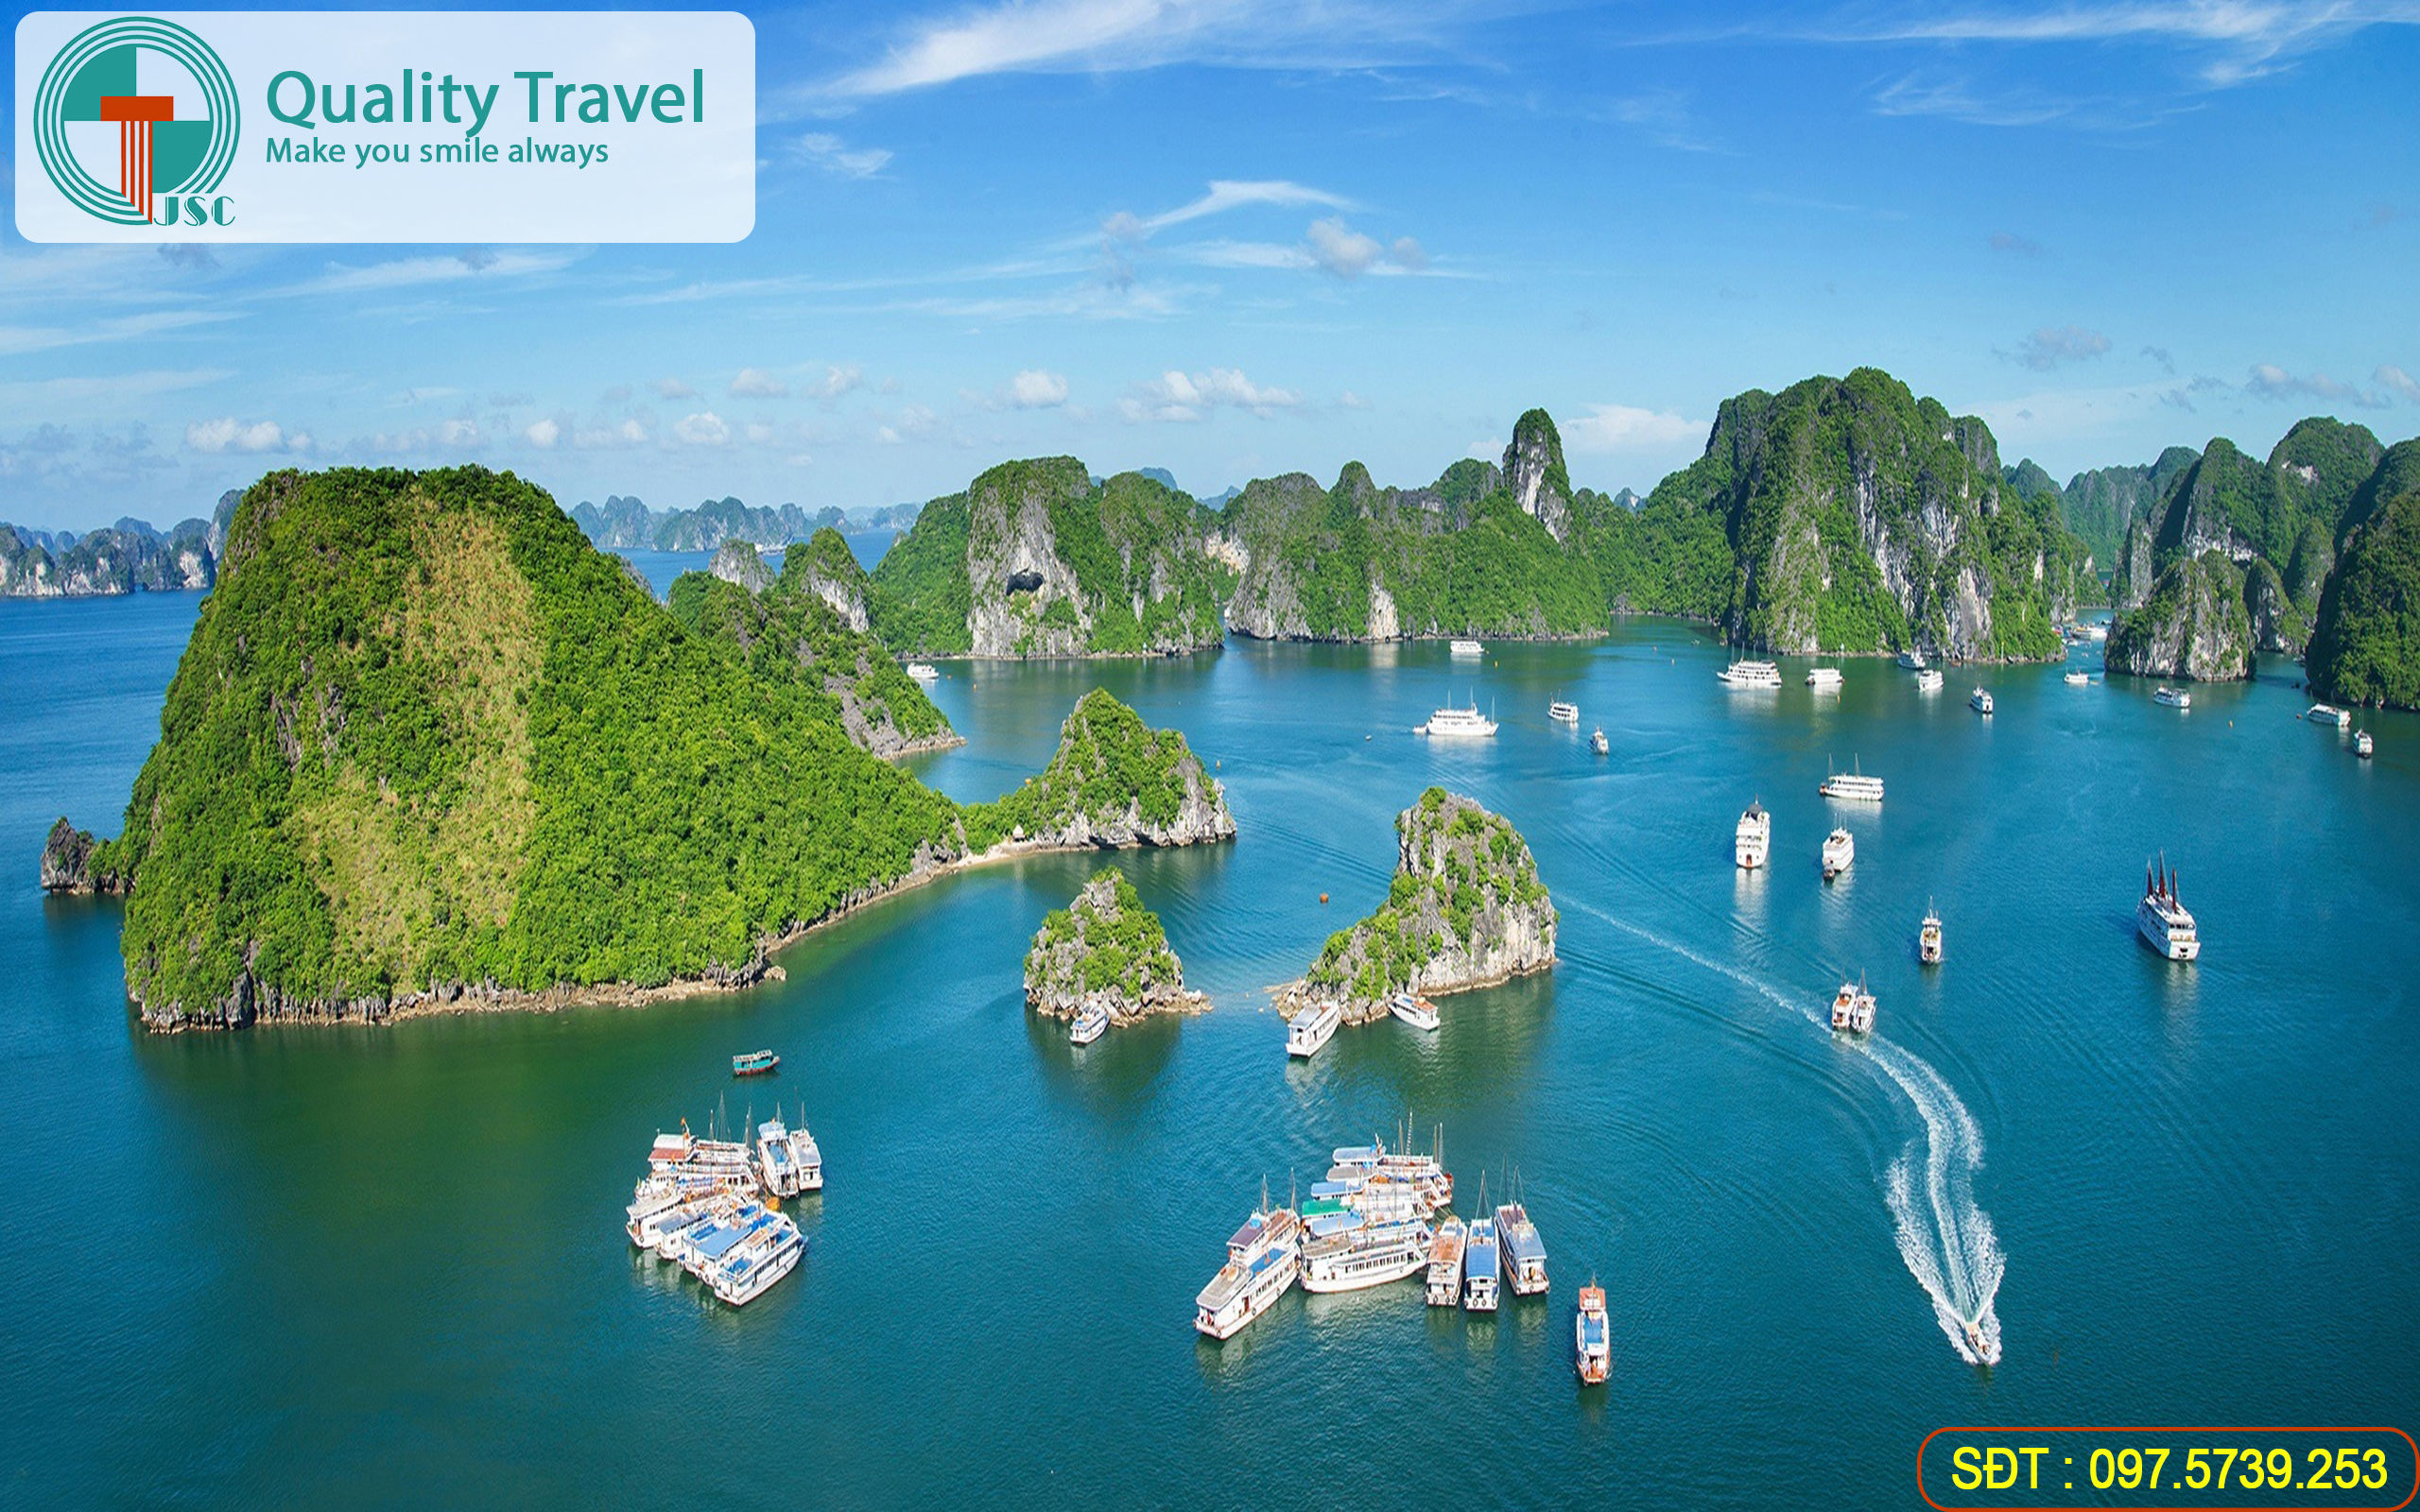 Du lịch miền bắc trọn gói cung cấp chương trình tour du lịch miền bắc đầy đủ nhất cho du khách là người Sài Gòn, Việt Kiều hoặc khách nước ngoài.